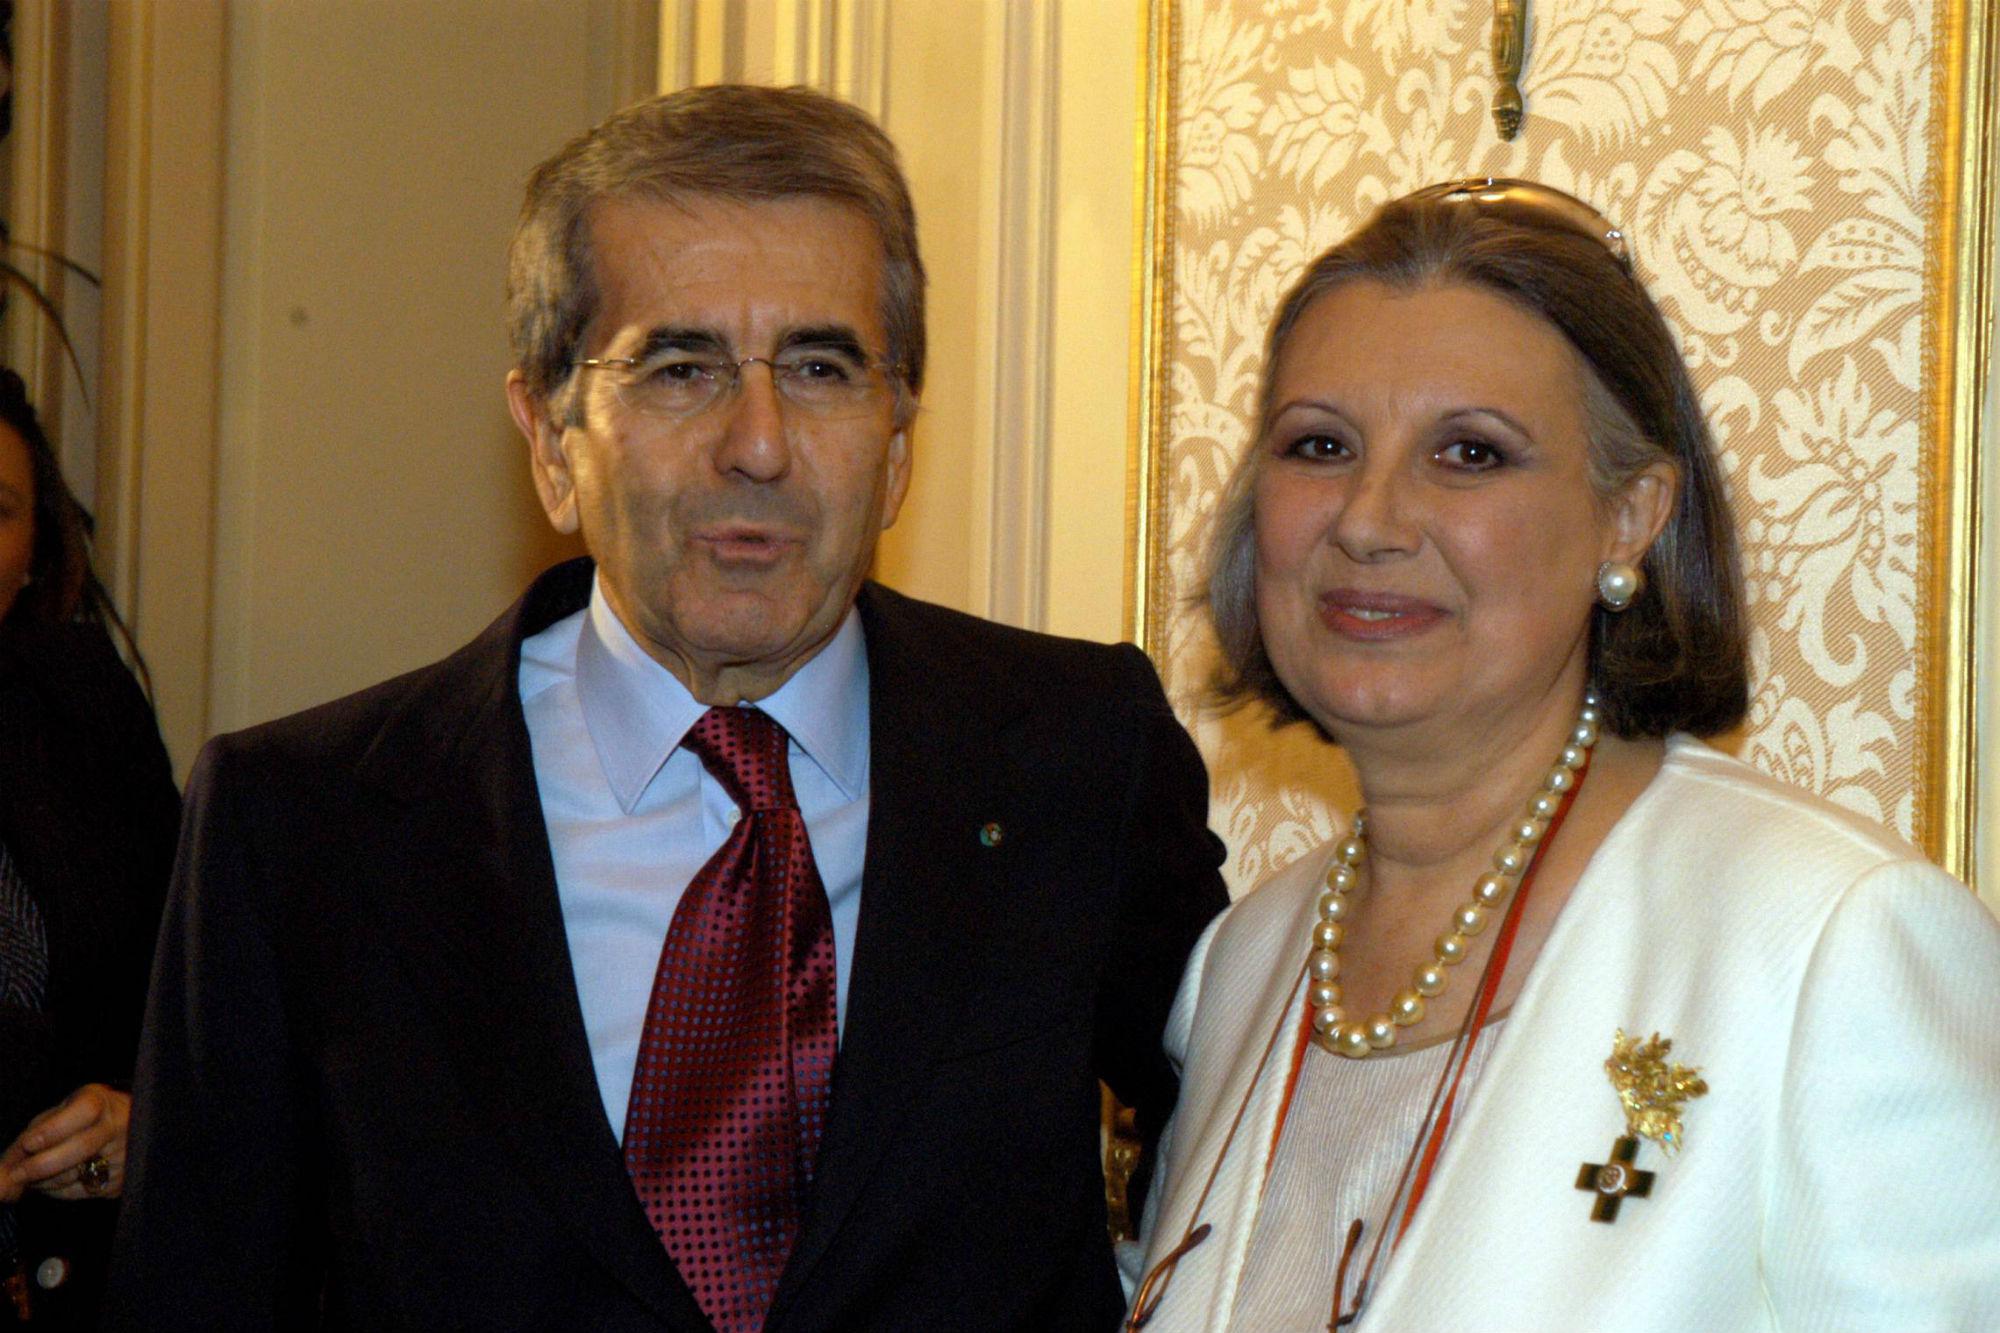 L'imprenditore Merloni con Laura Biagiotti (Fotogramma)